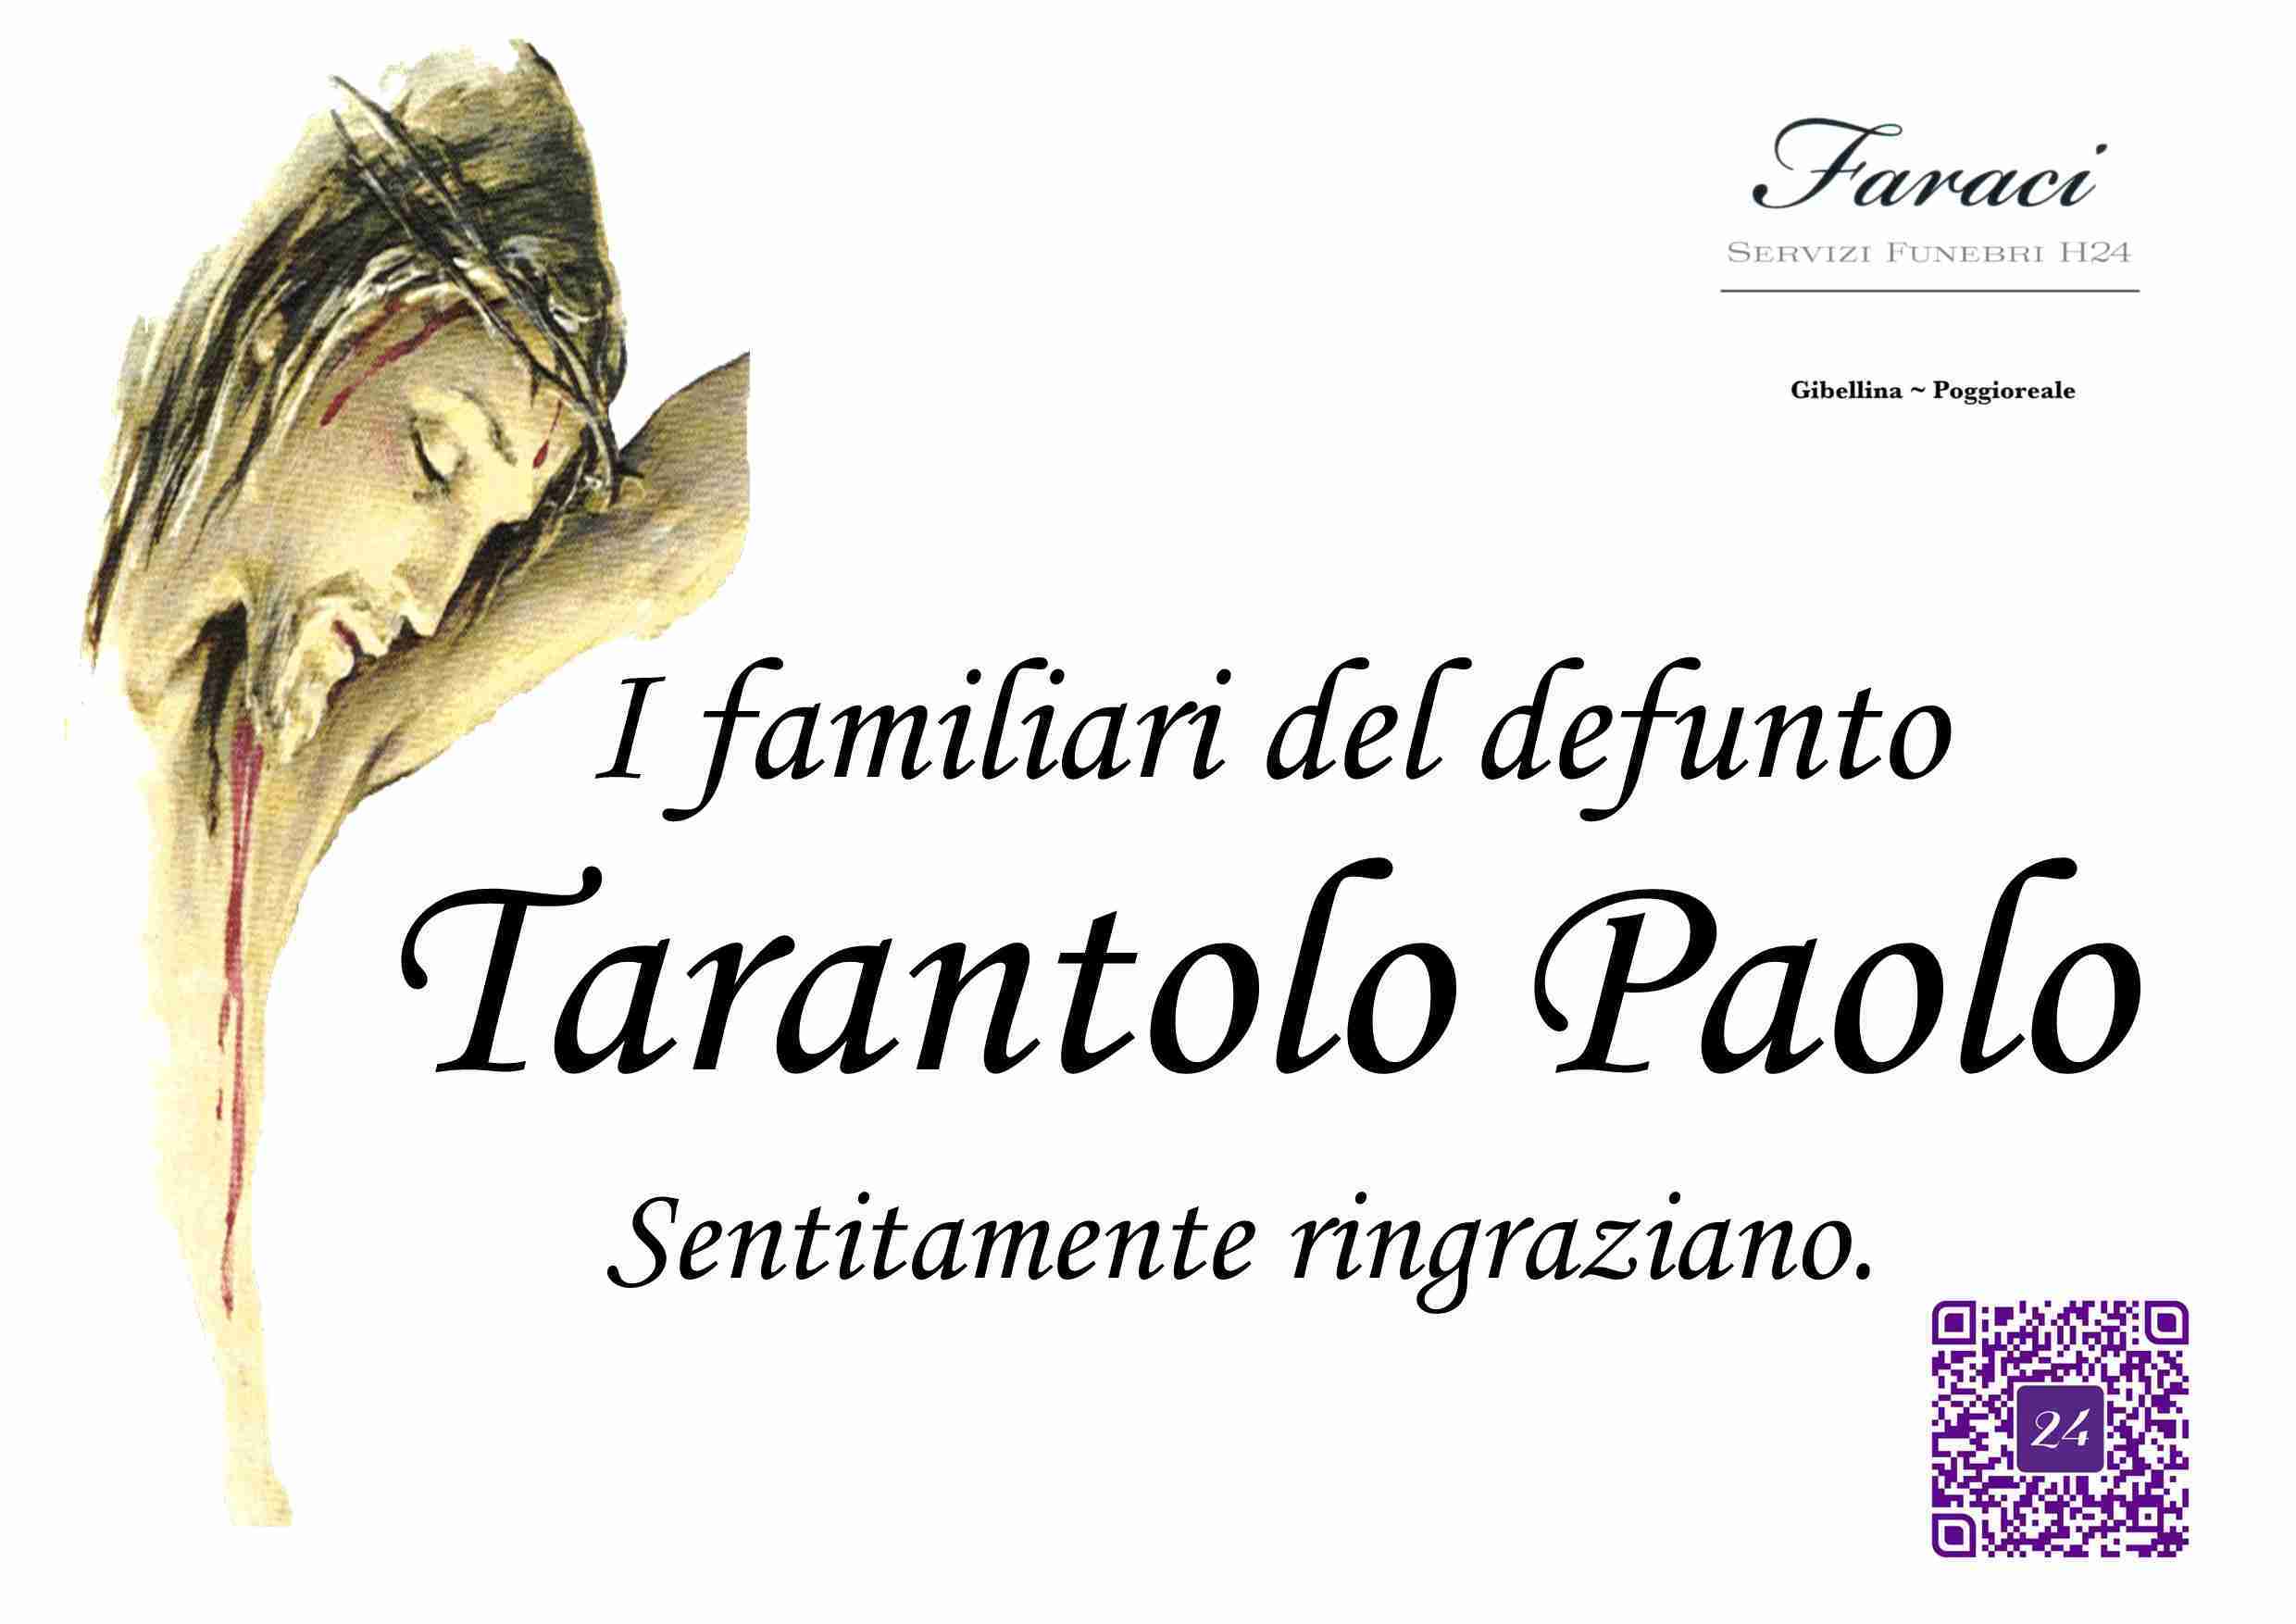 Paolo Tarantolo